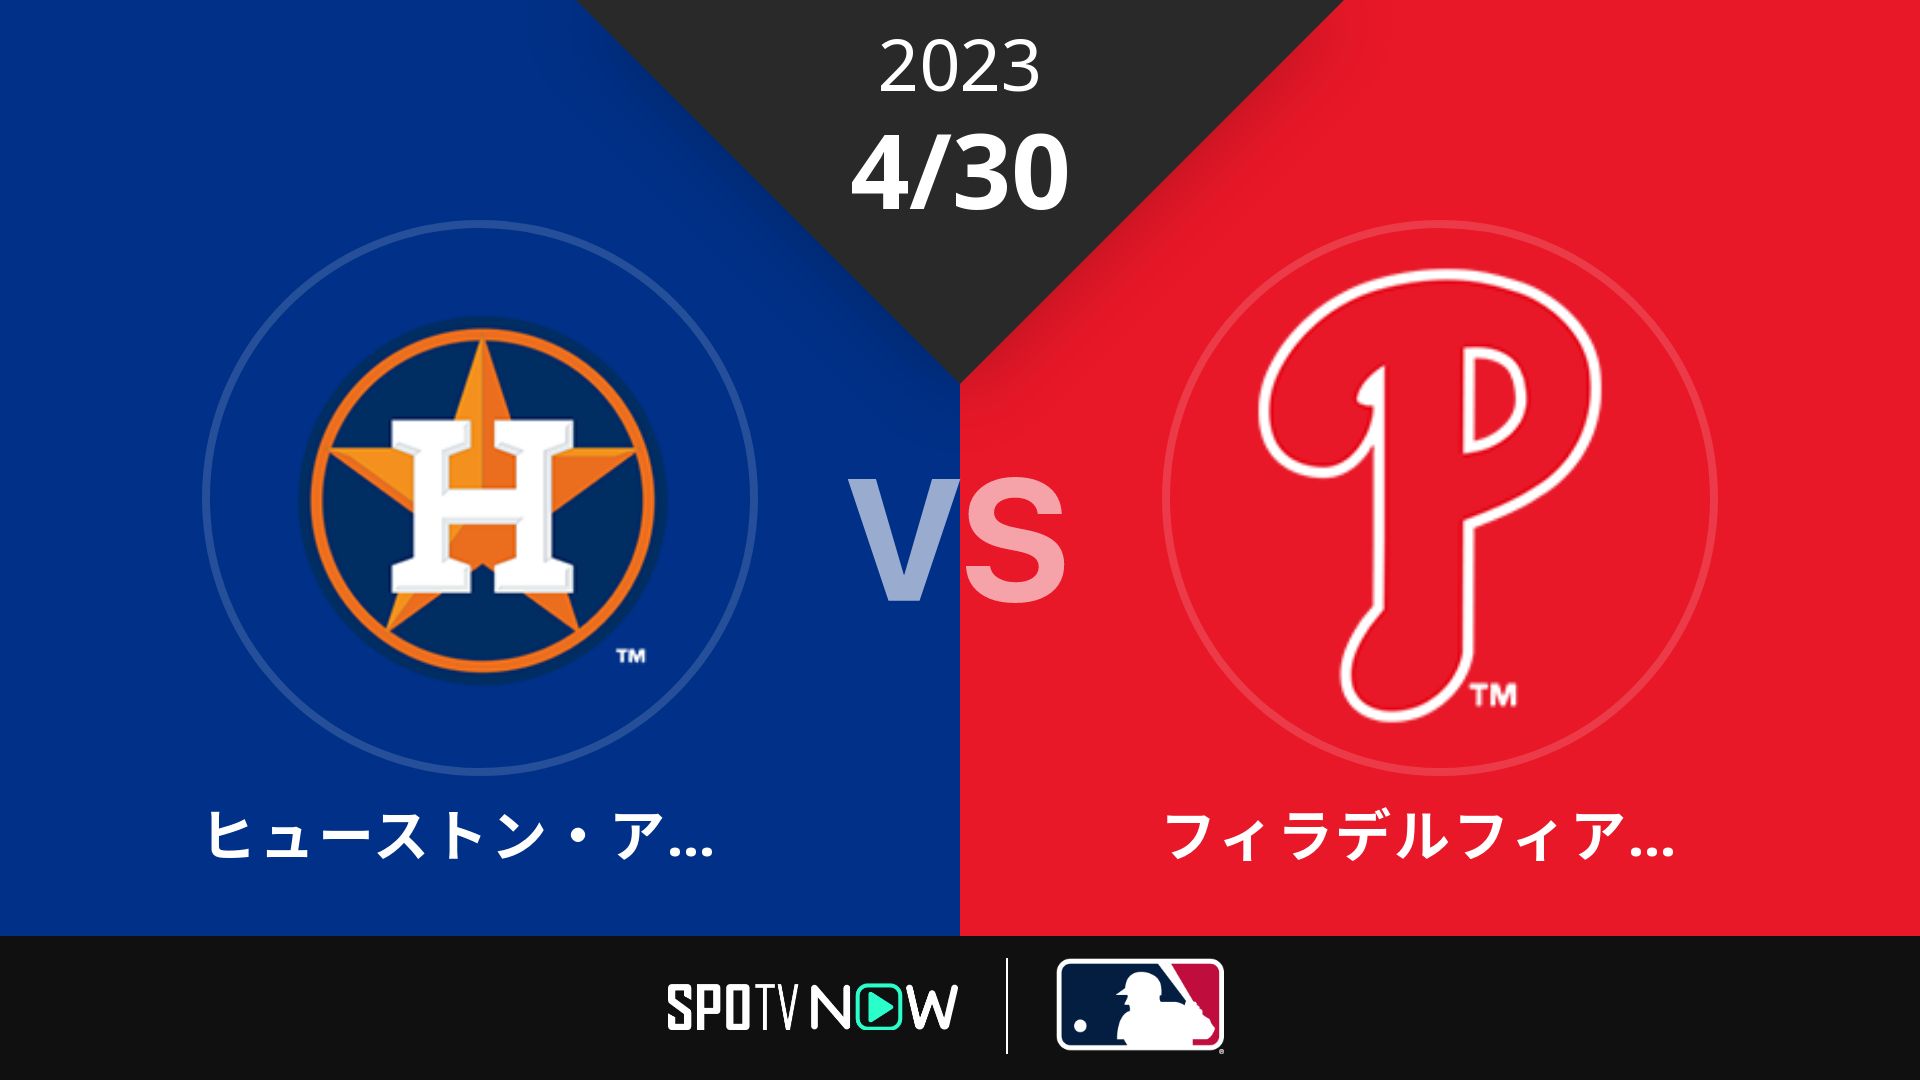 2023/4/30 アストロズ vs フィリーズ [MLB]